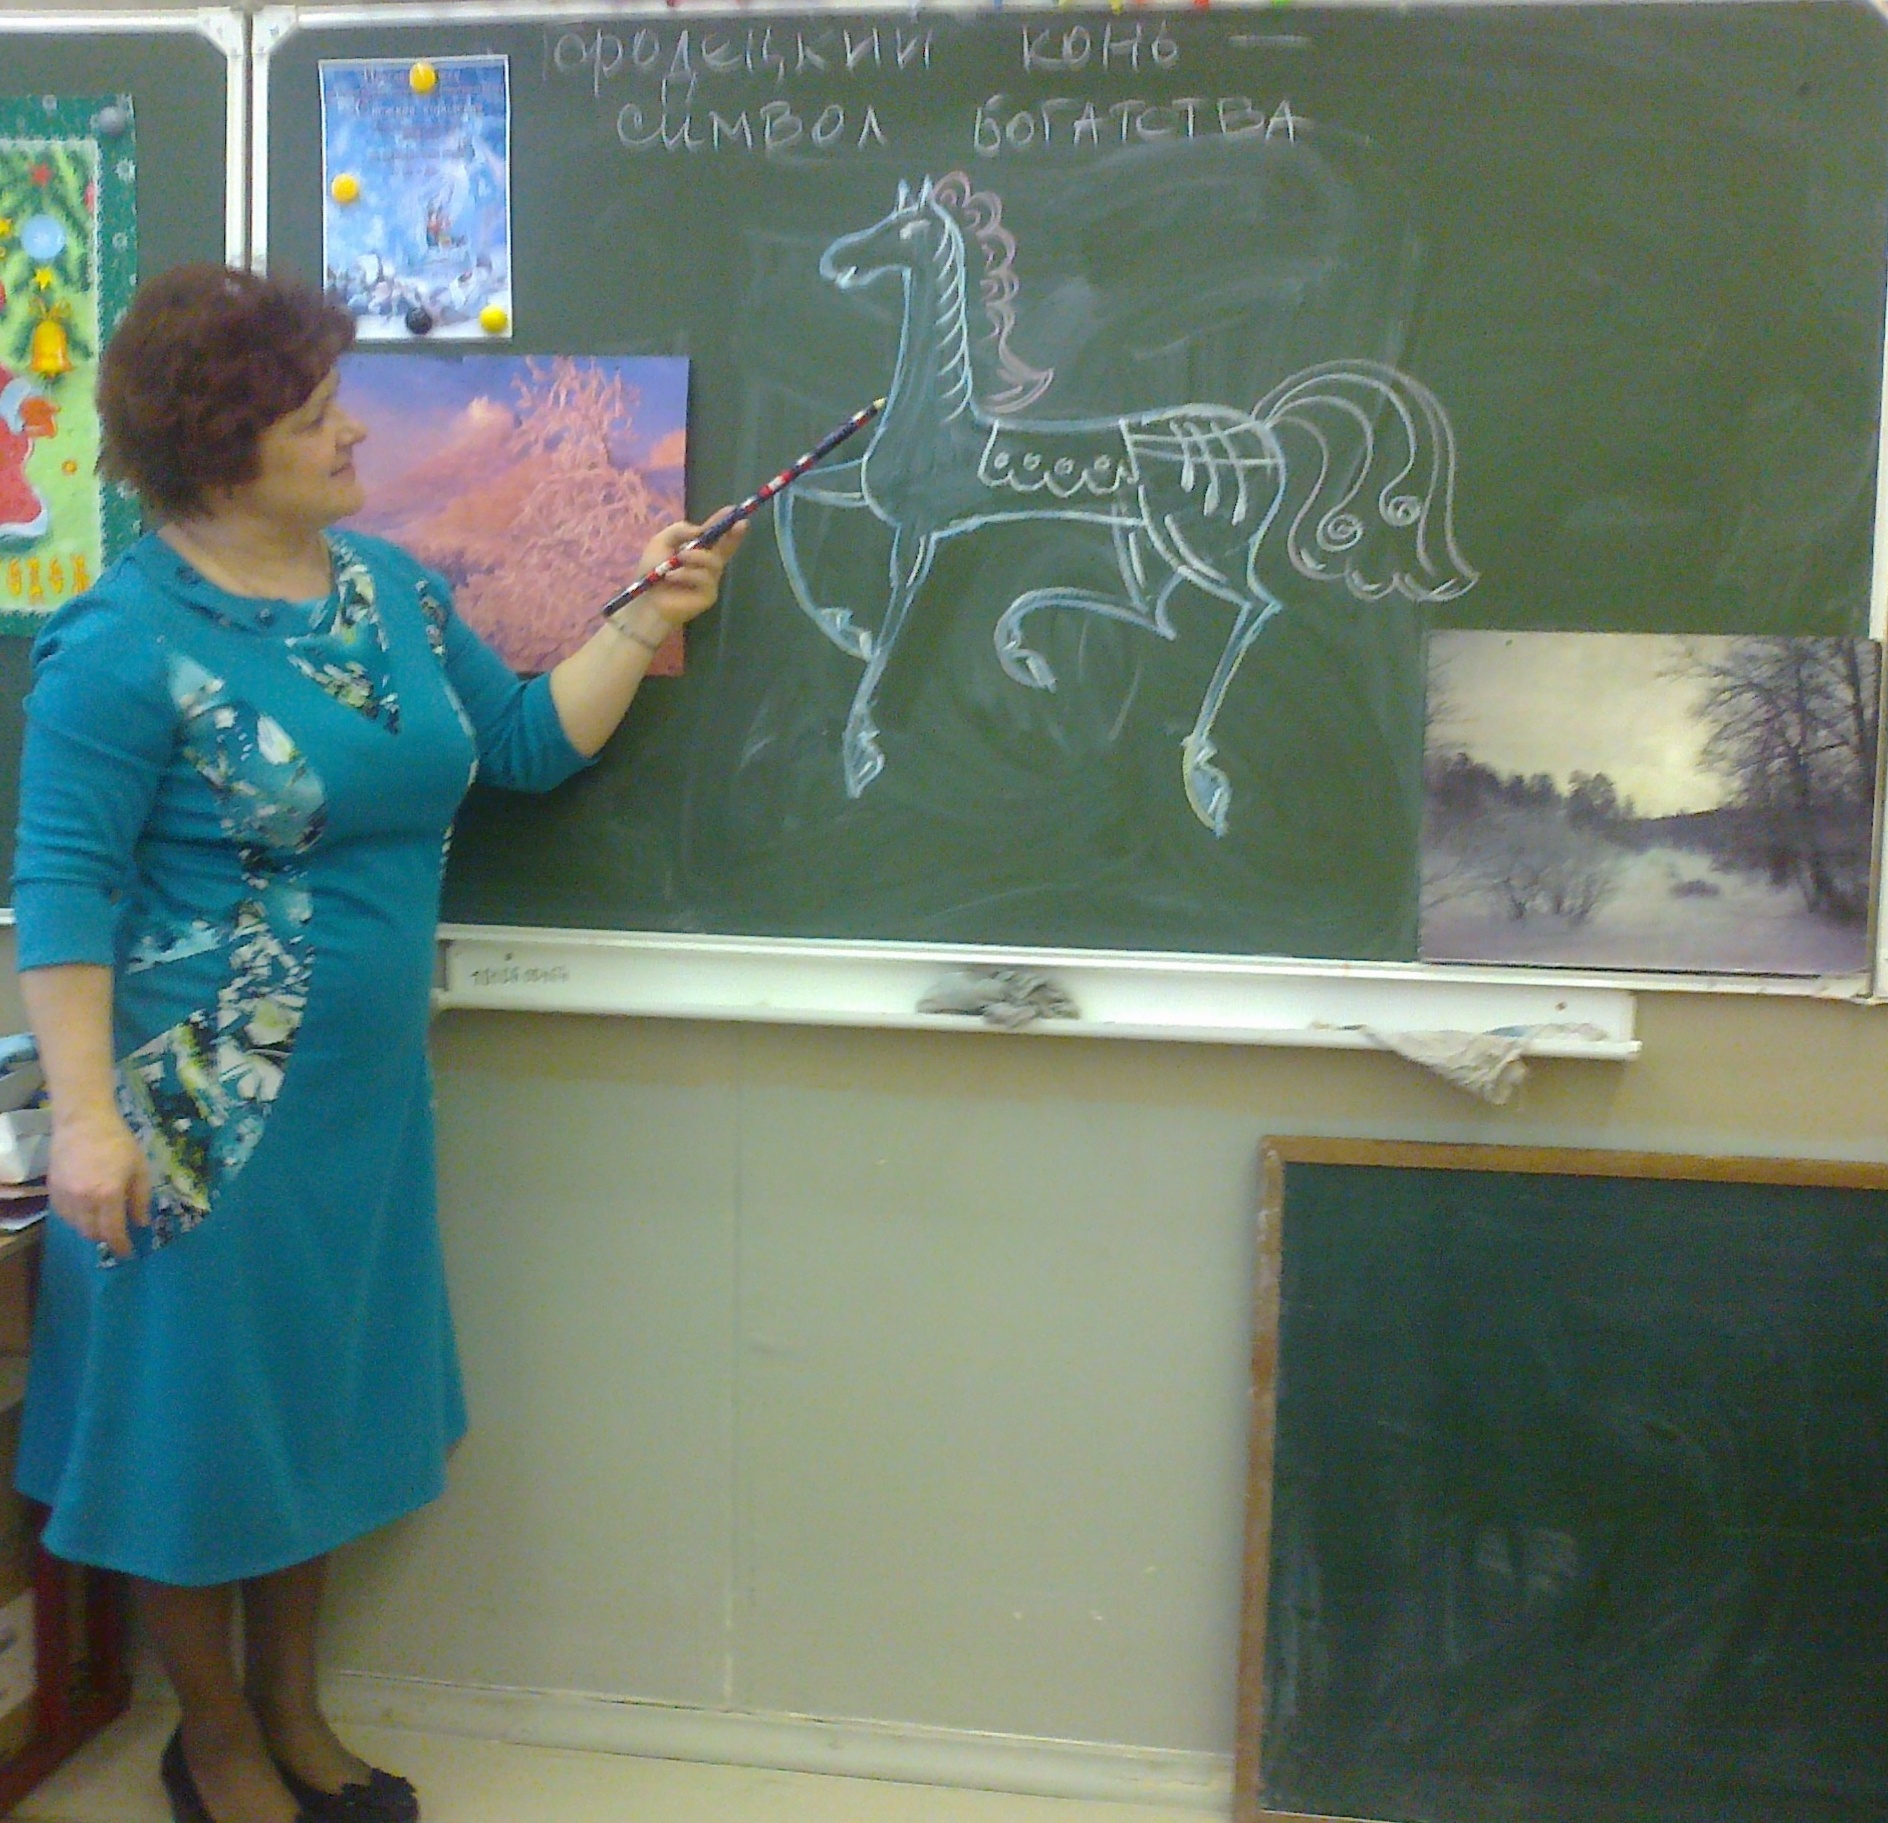 Мастер - класс для учителей Технологии и пдо Авторская разработка - Изображение Городецкого коня - символа богатства.